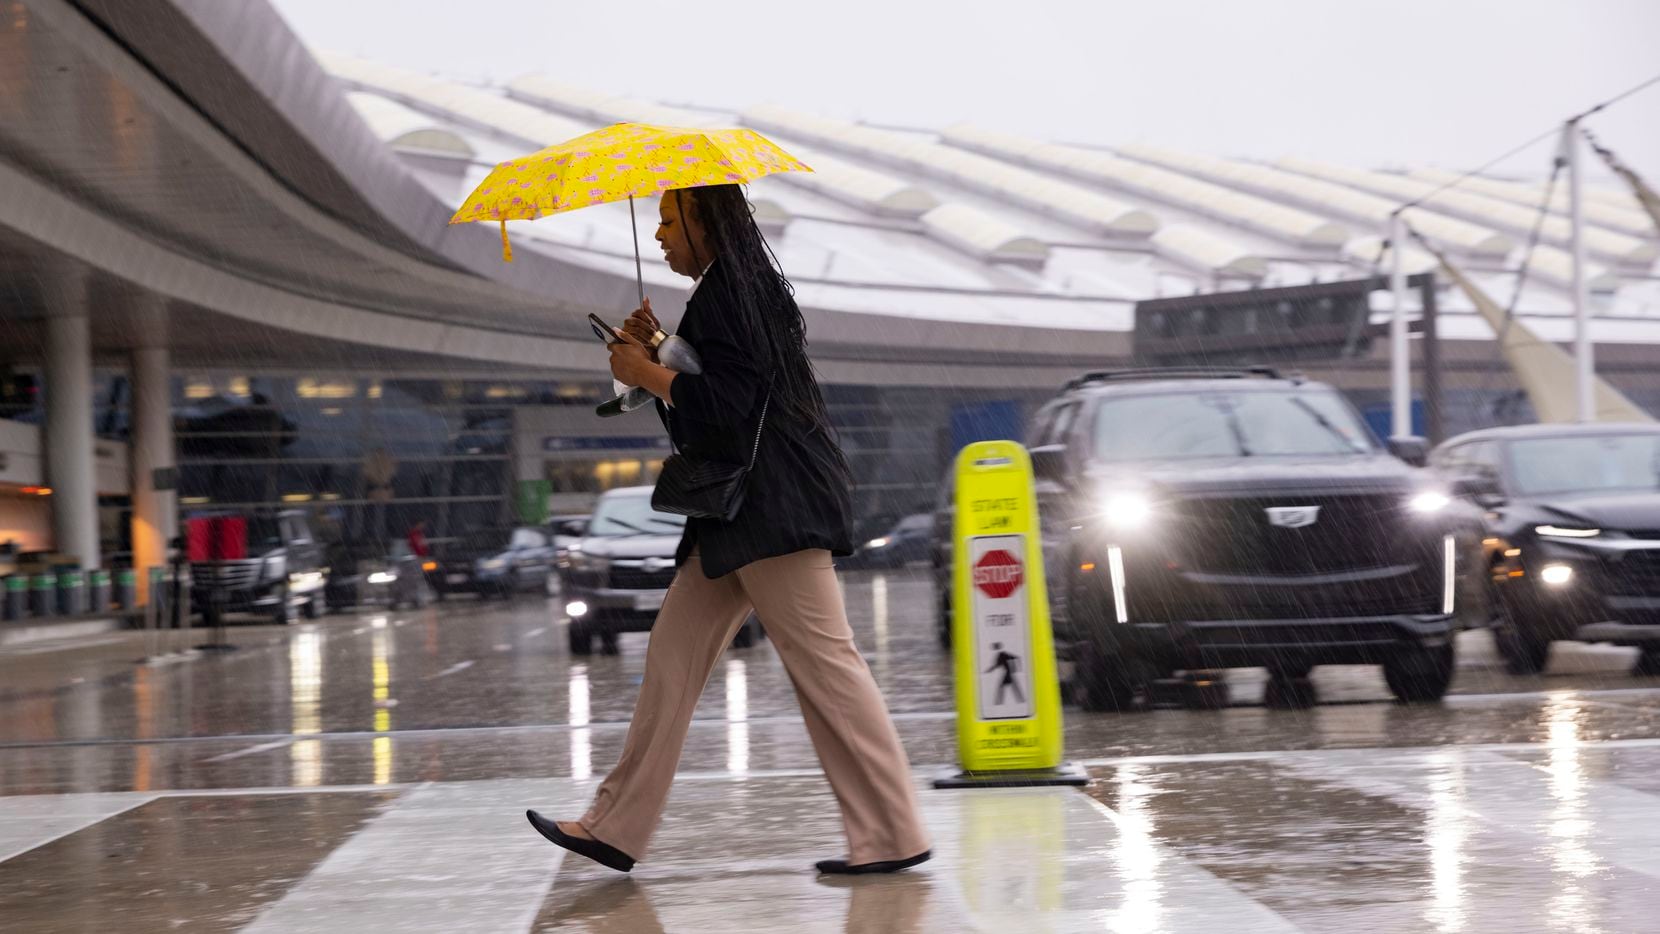 El DFW Airport y Love Field sufren retrasos por mal tiempo este miércoles.